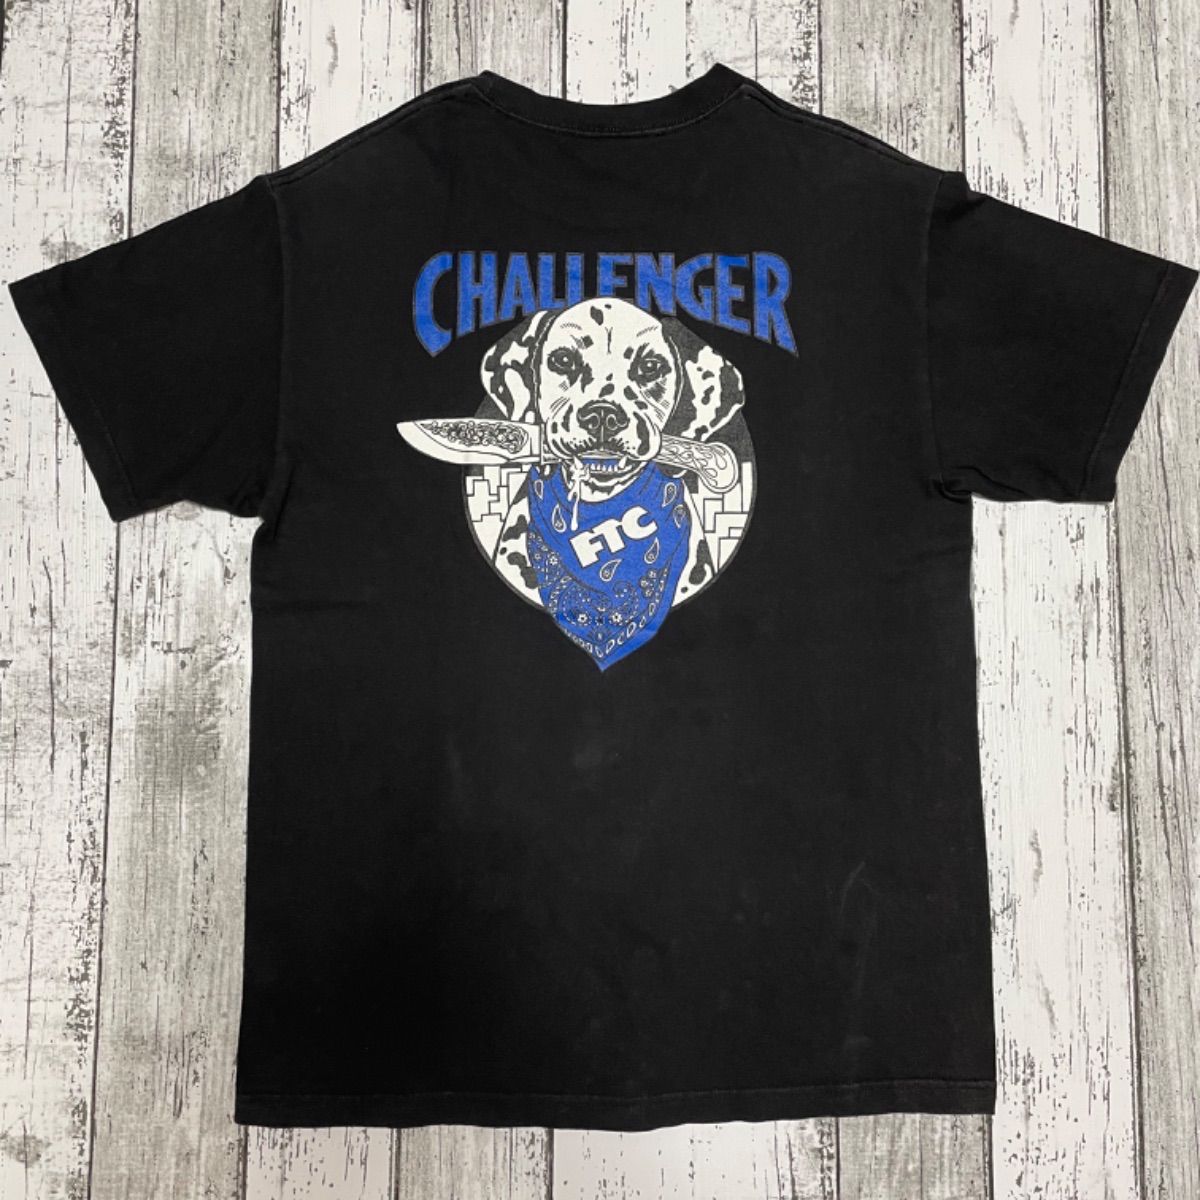 challenger × ftc Tシャツ 人気 Lサイズ ブラック 野村周平 - メルカリ